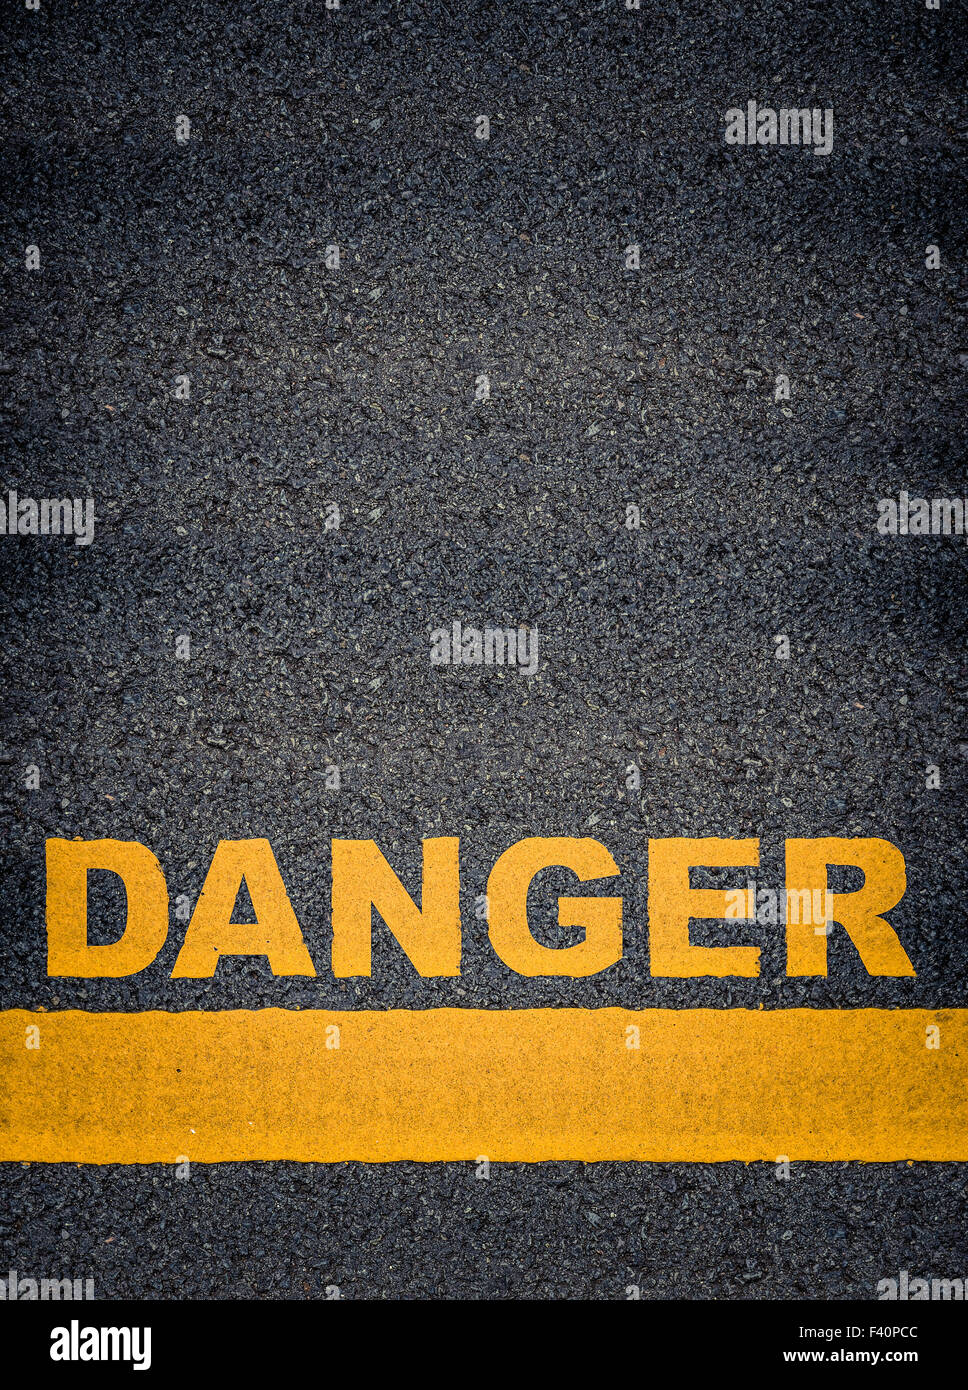 Danger Asphalt Road Markings Stock Photo